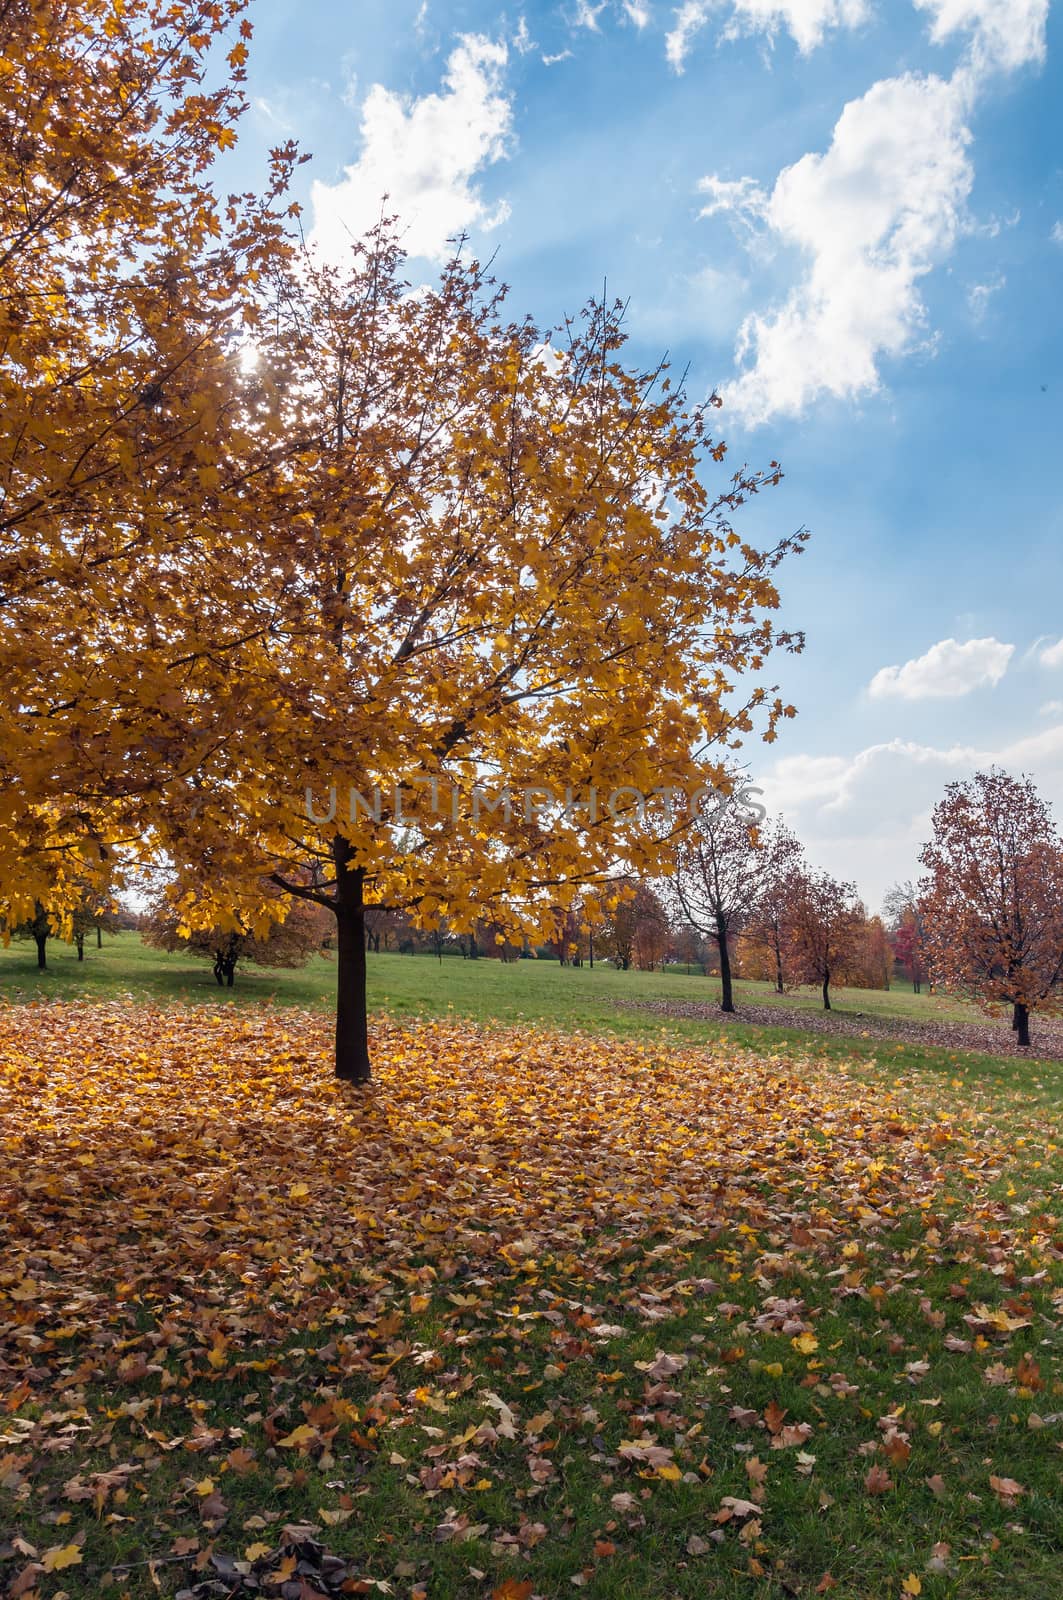 Autumn trees in a park, Sosnowiec, Poland